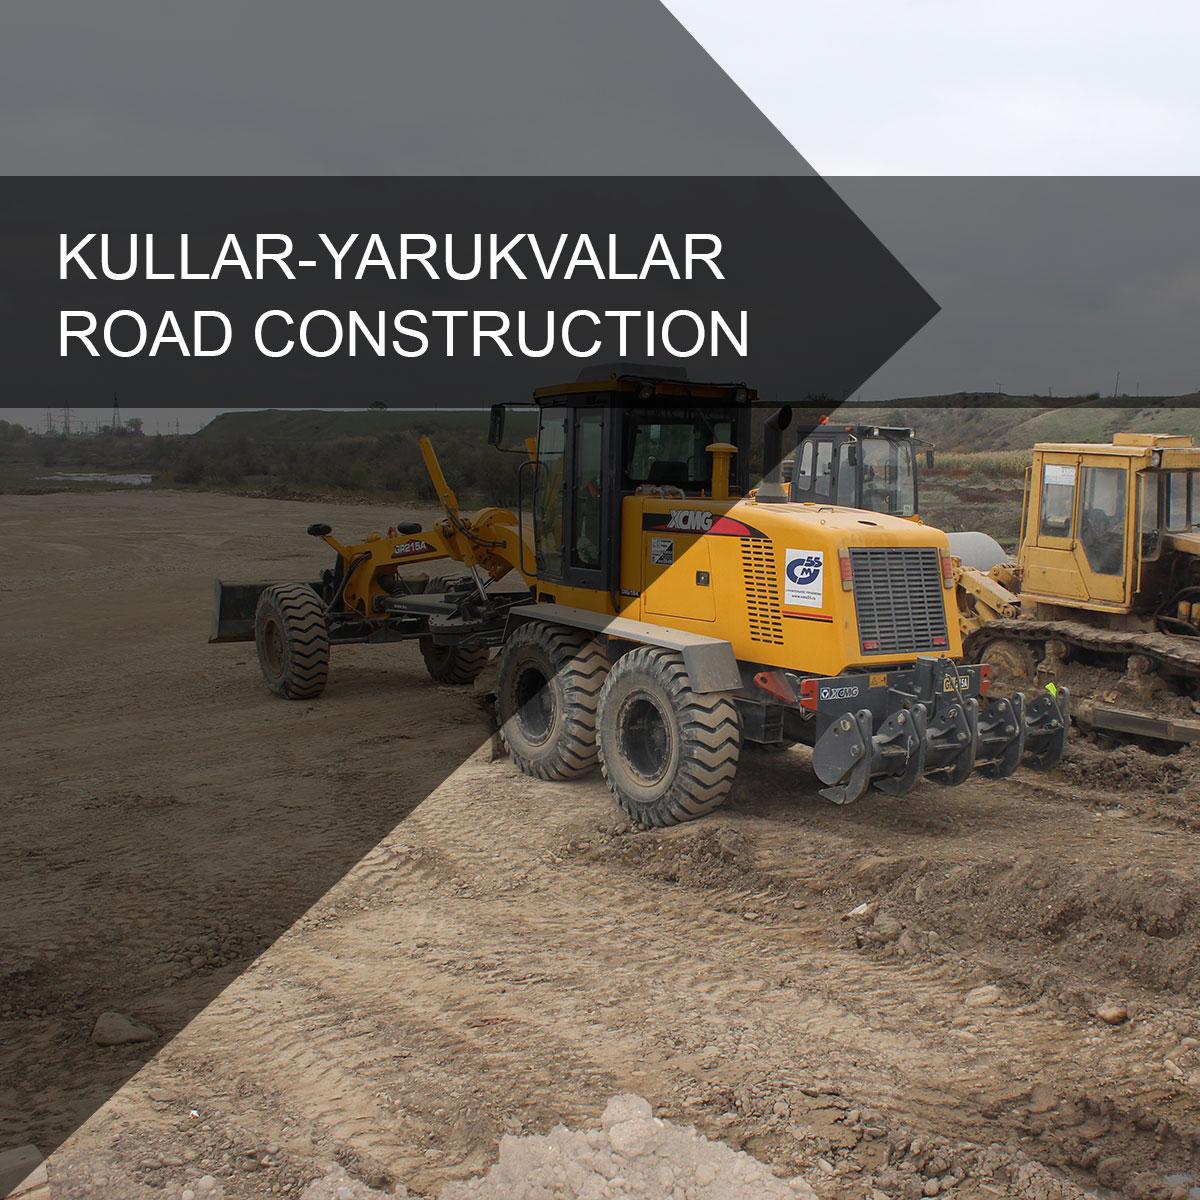 Kullar-Yarukvalar road construction